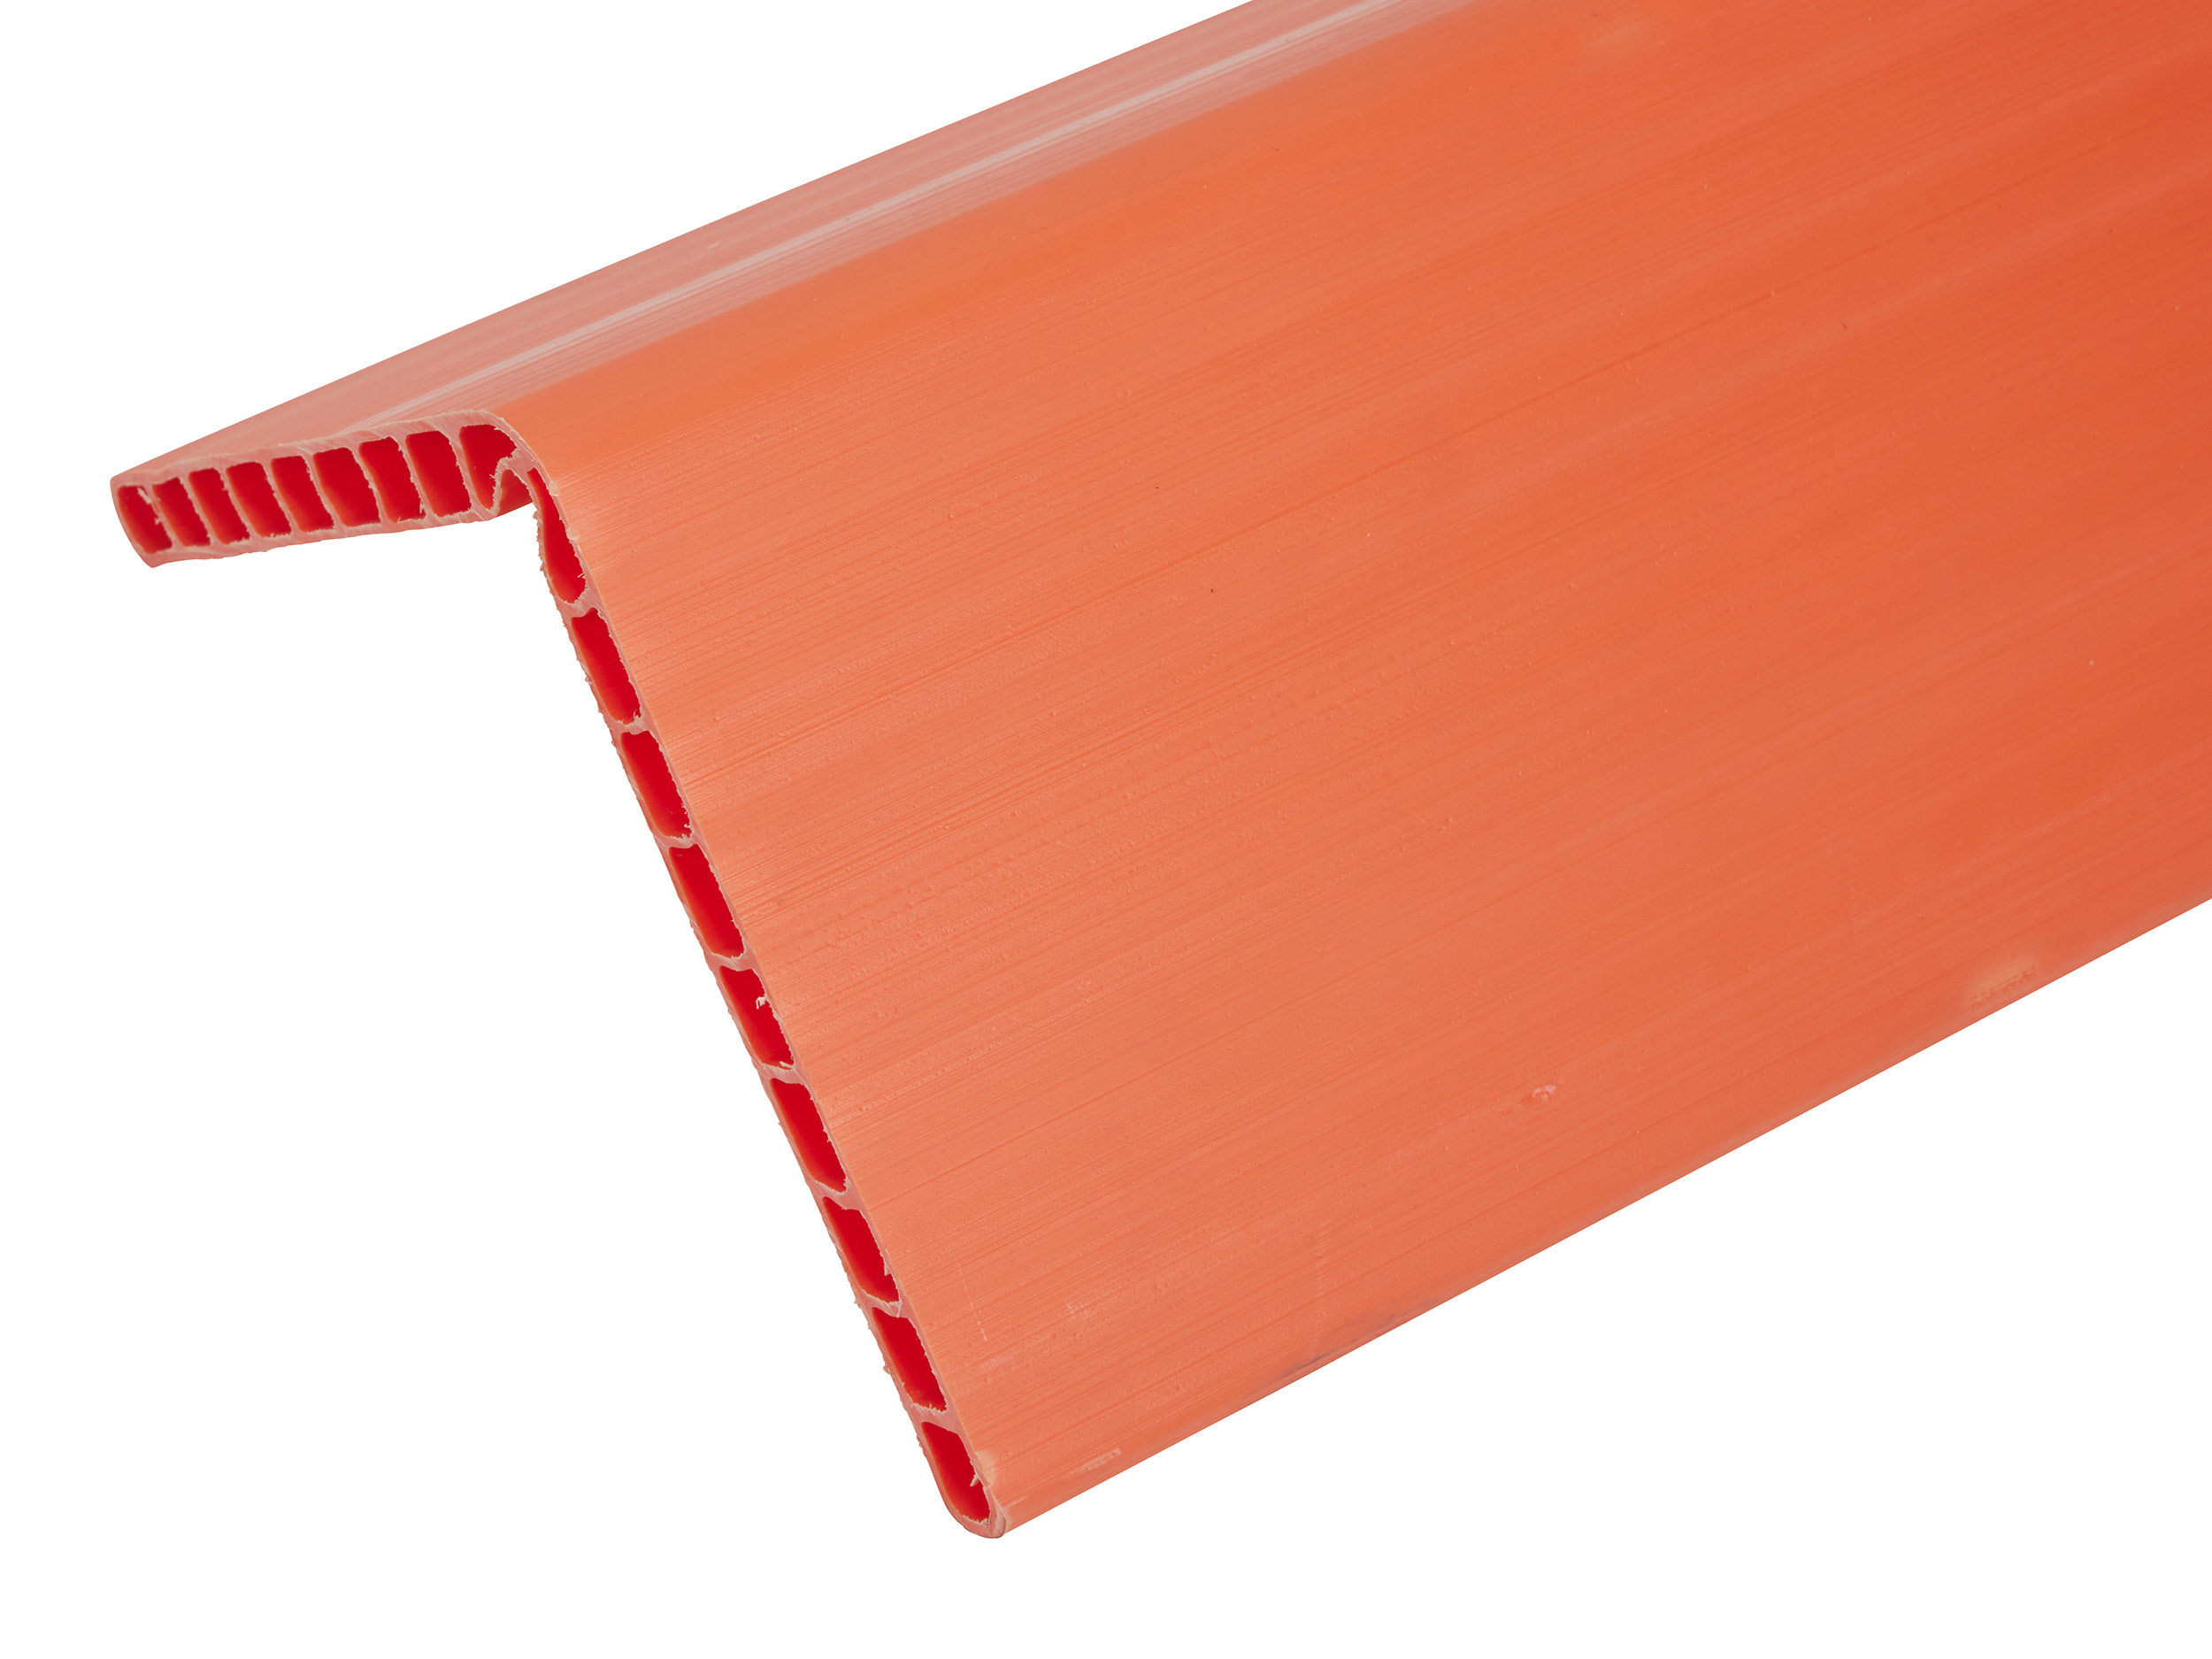 Kantenschutzwinkelleiste Kunststoff (Hohlkammerstruktur), orange, 1.2m